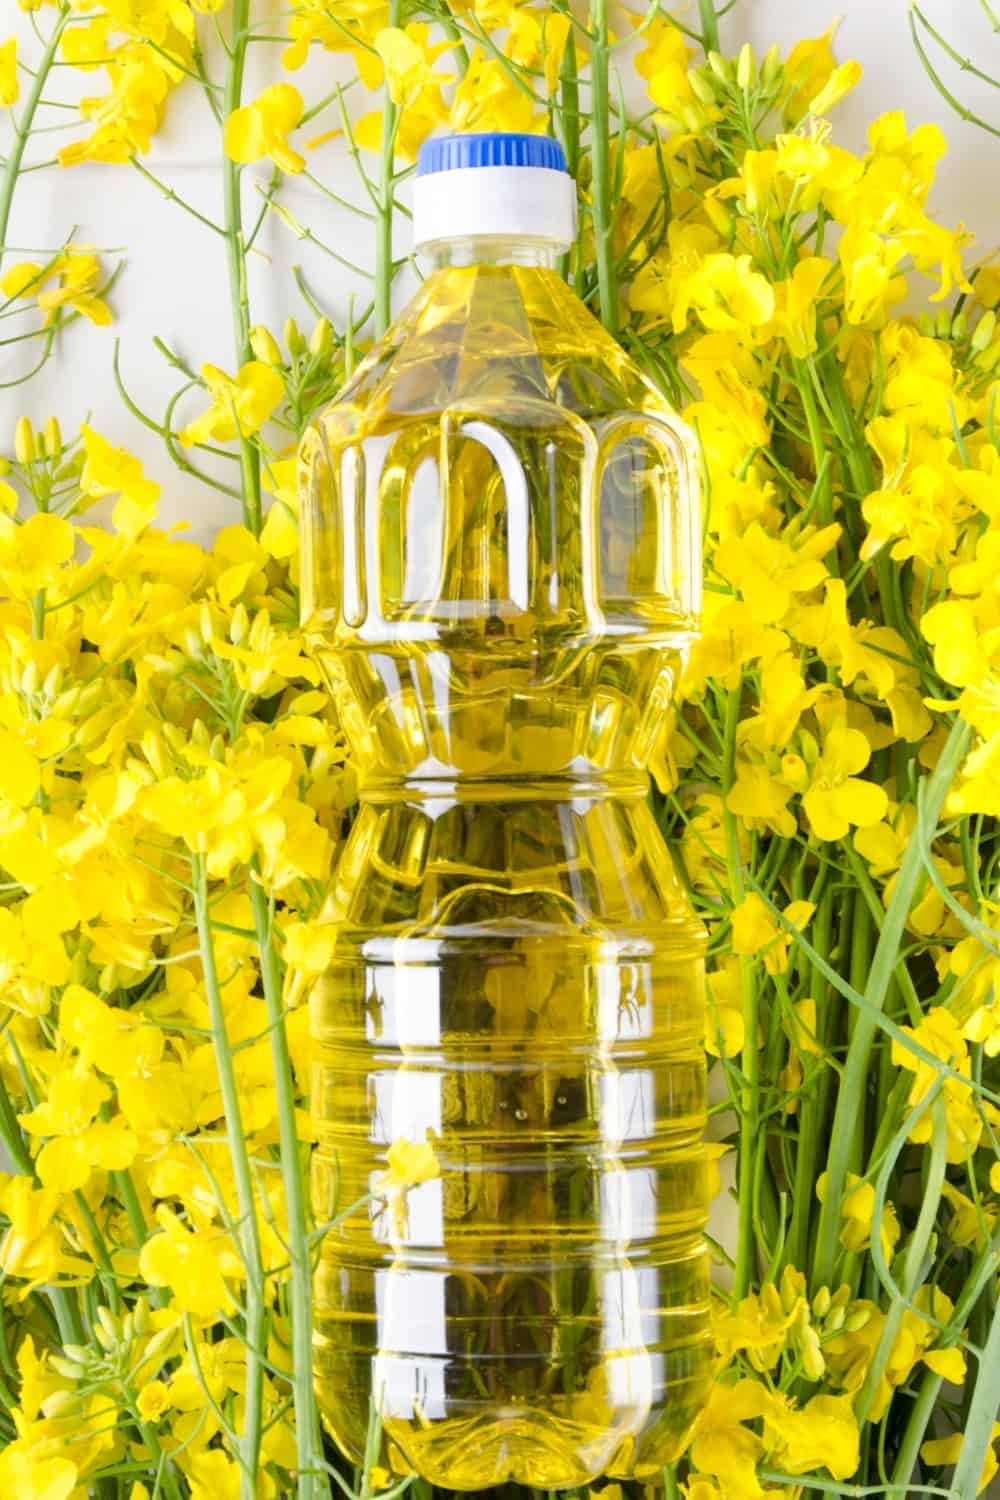 huile de colza dans une bouteille placée sur les fleurs